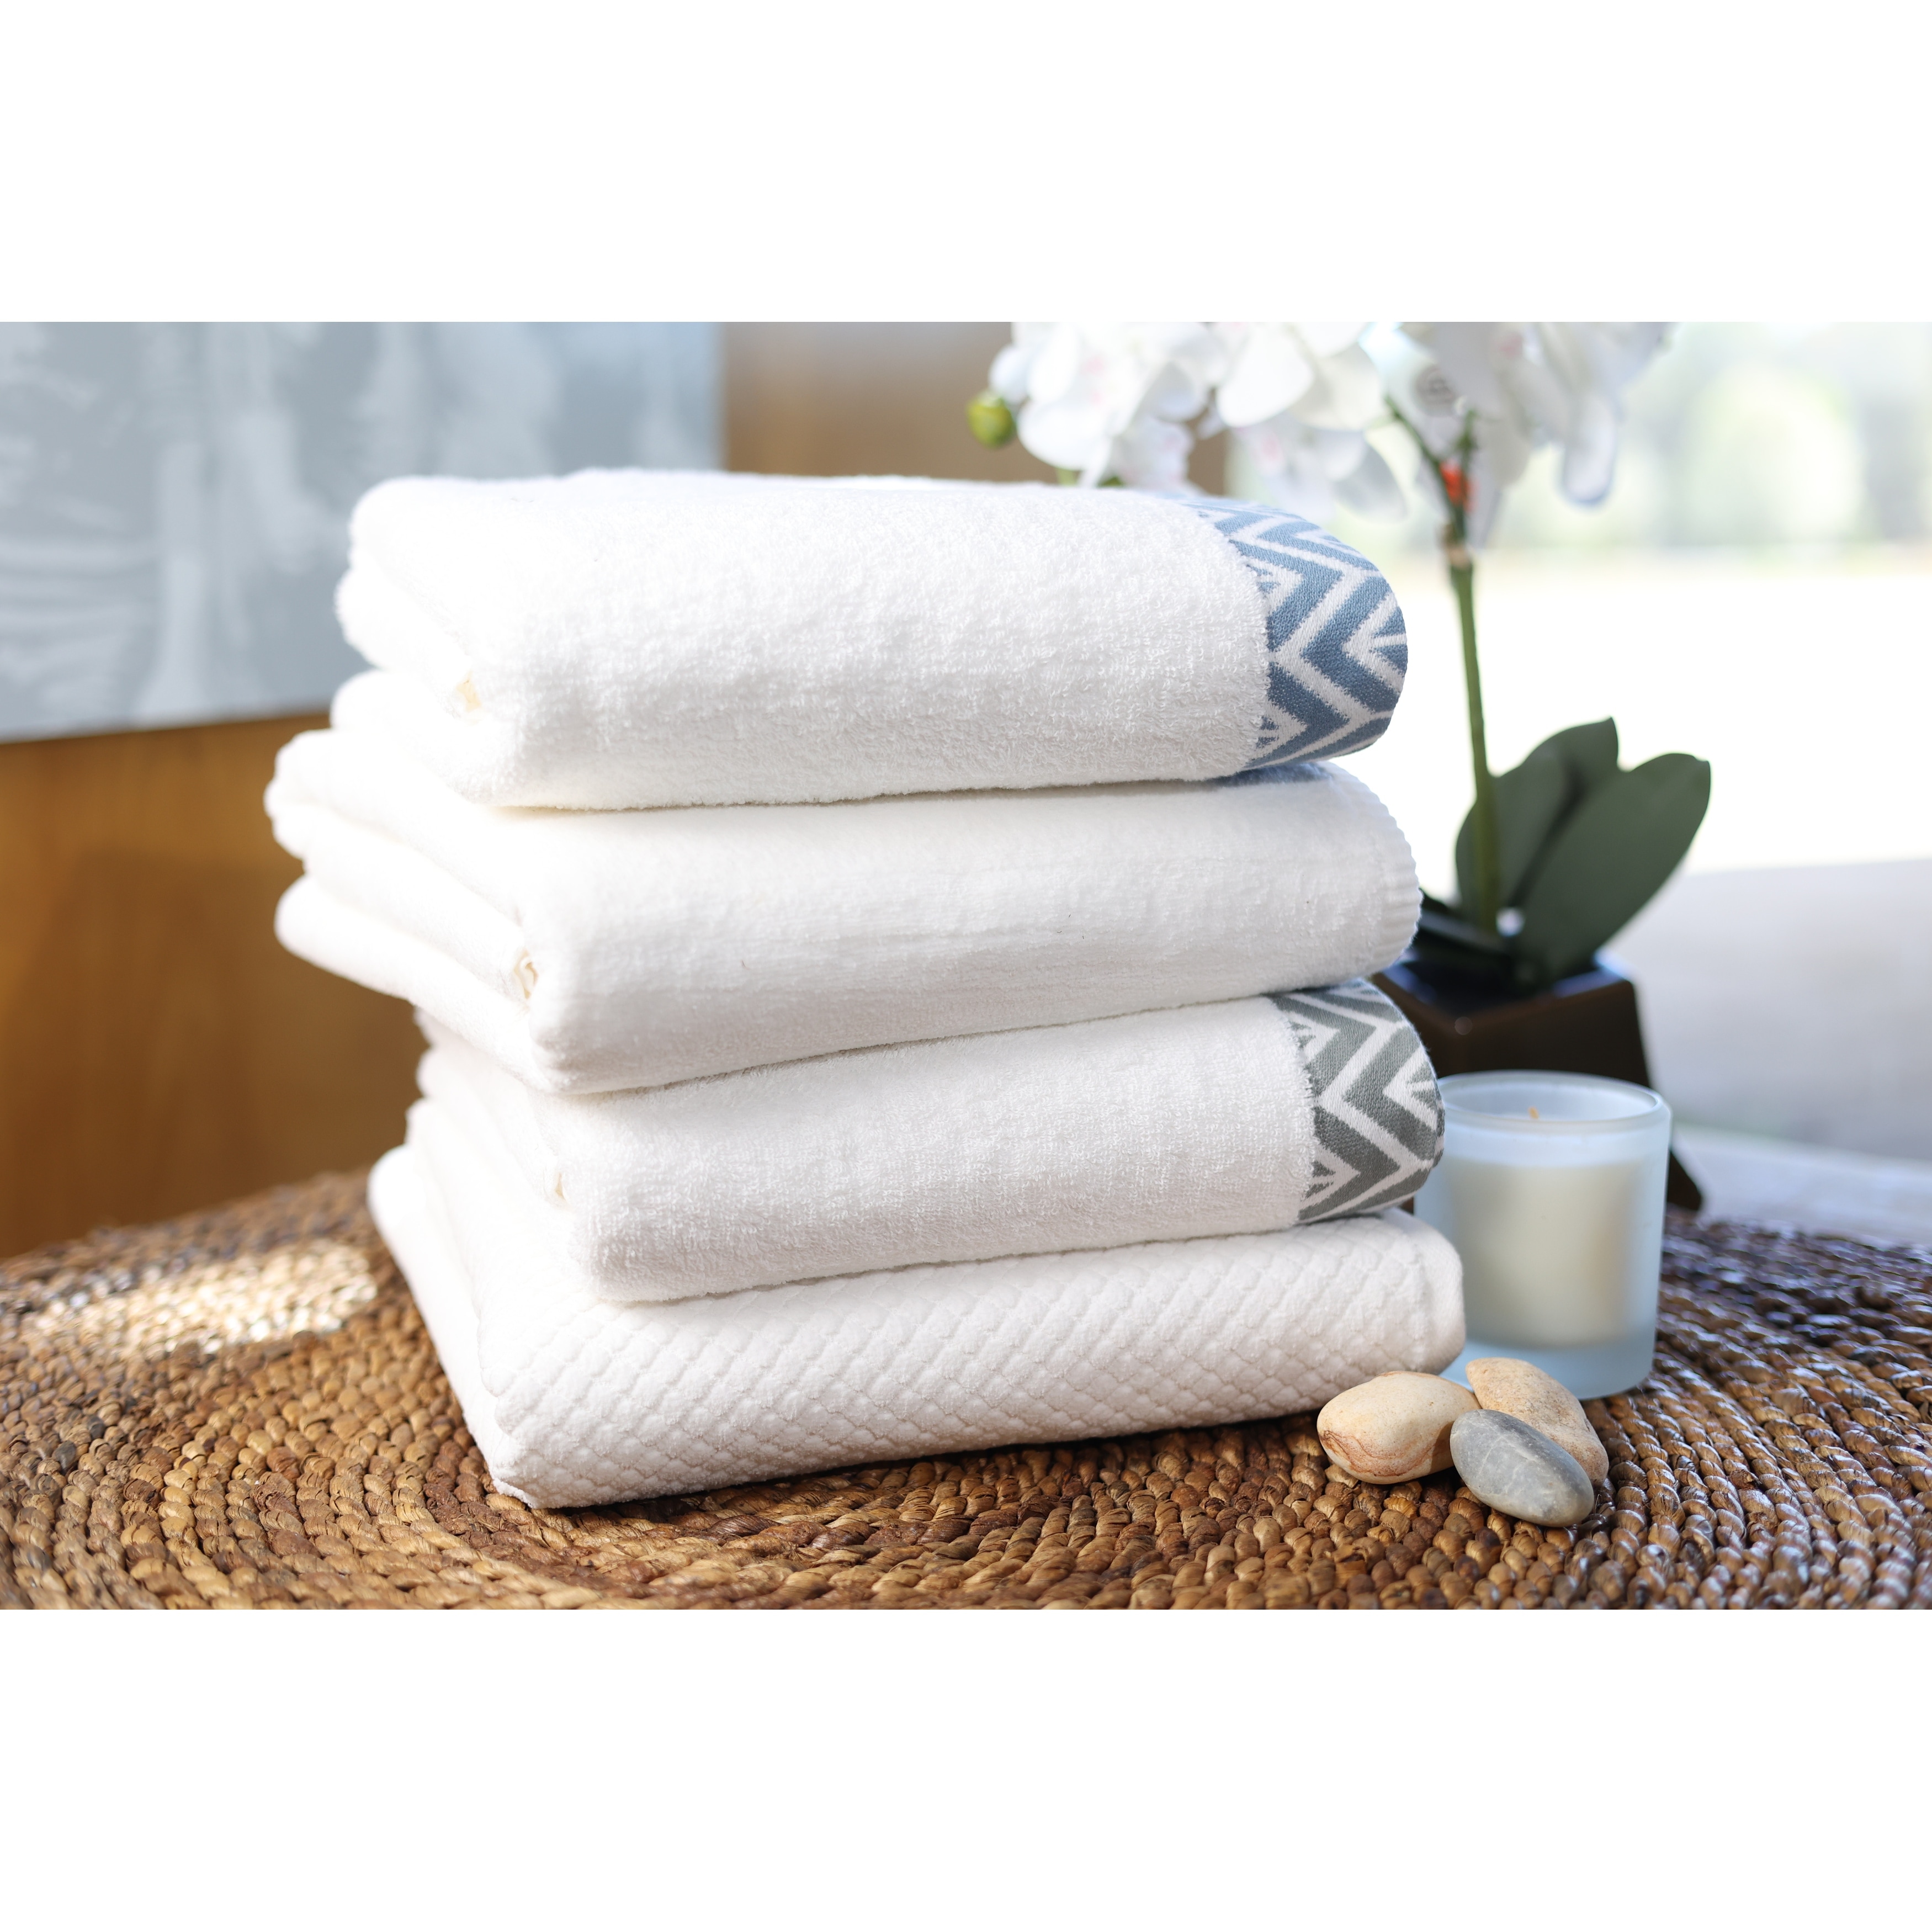 Premium Bath Towel Sets White / 6 Pieces Set